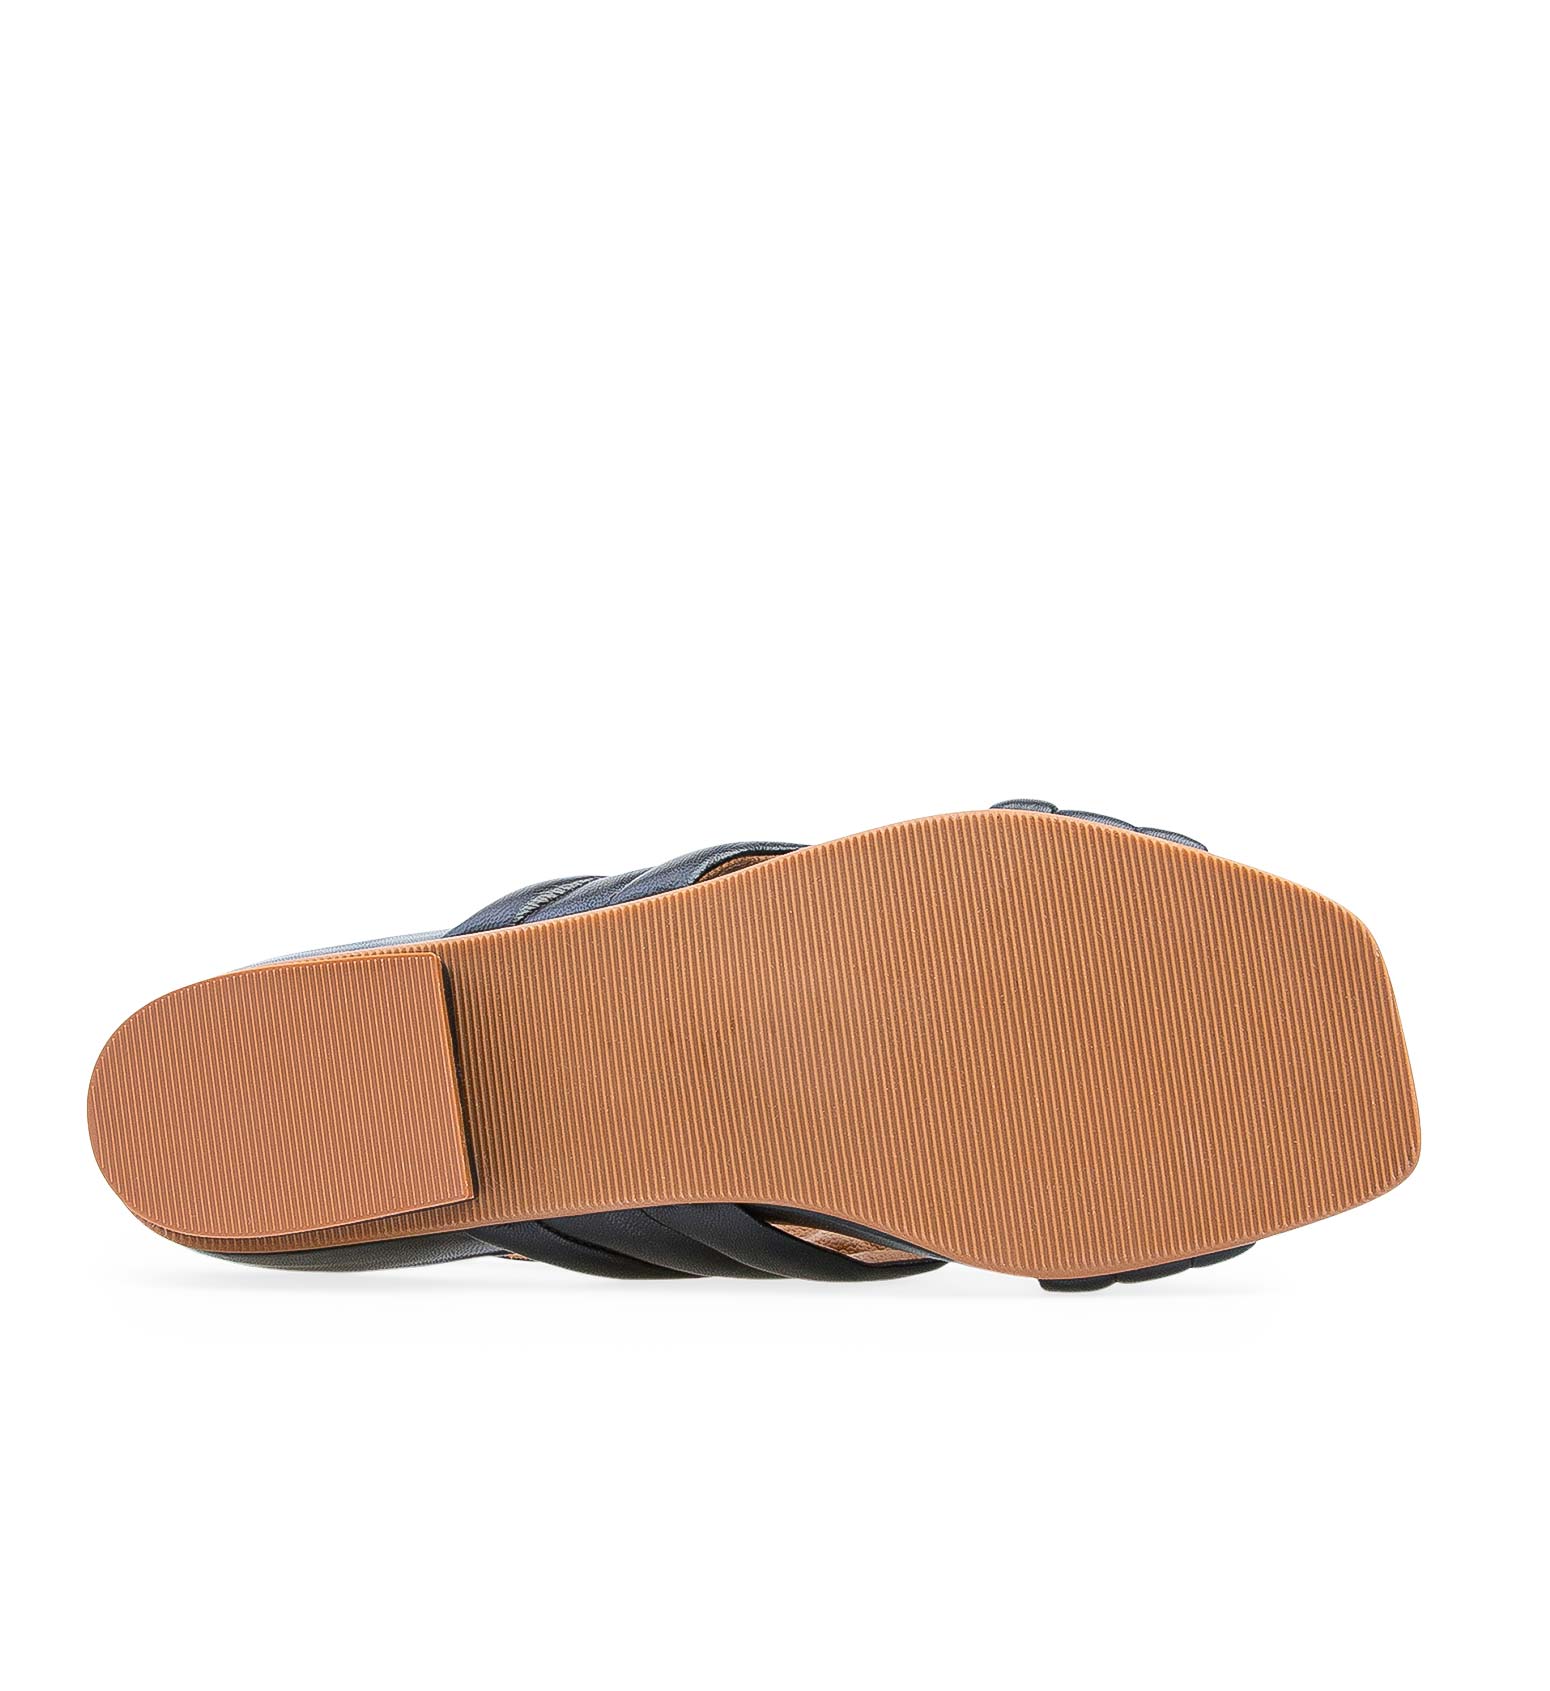 Batis Black Leather Flat Sandals | Bared Footwear